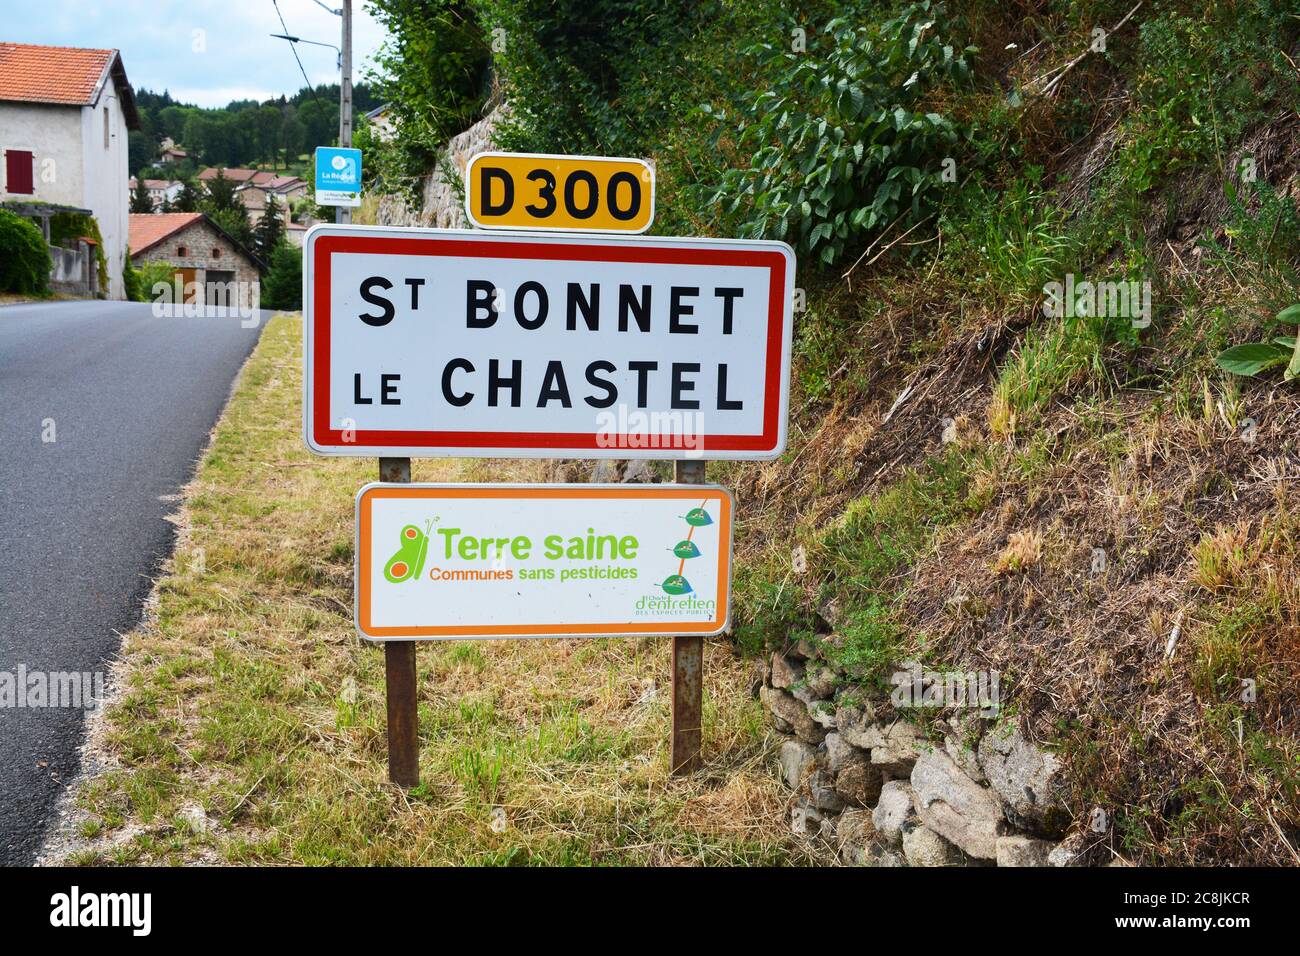 Verkehrsschild, « terre saine », Saint Bonnet le Chastel, Puy-de-Dome, Livradois-Forez, Auvergne, Frankreich Stockfoto